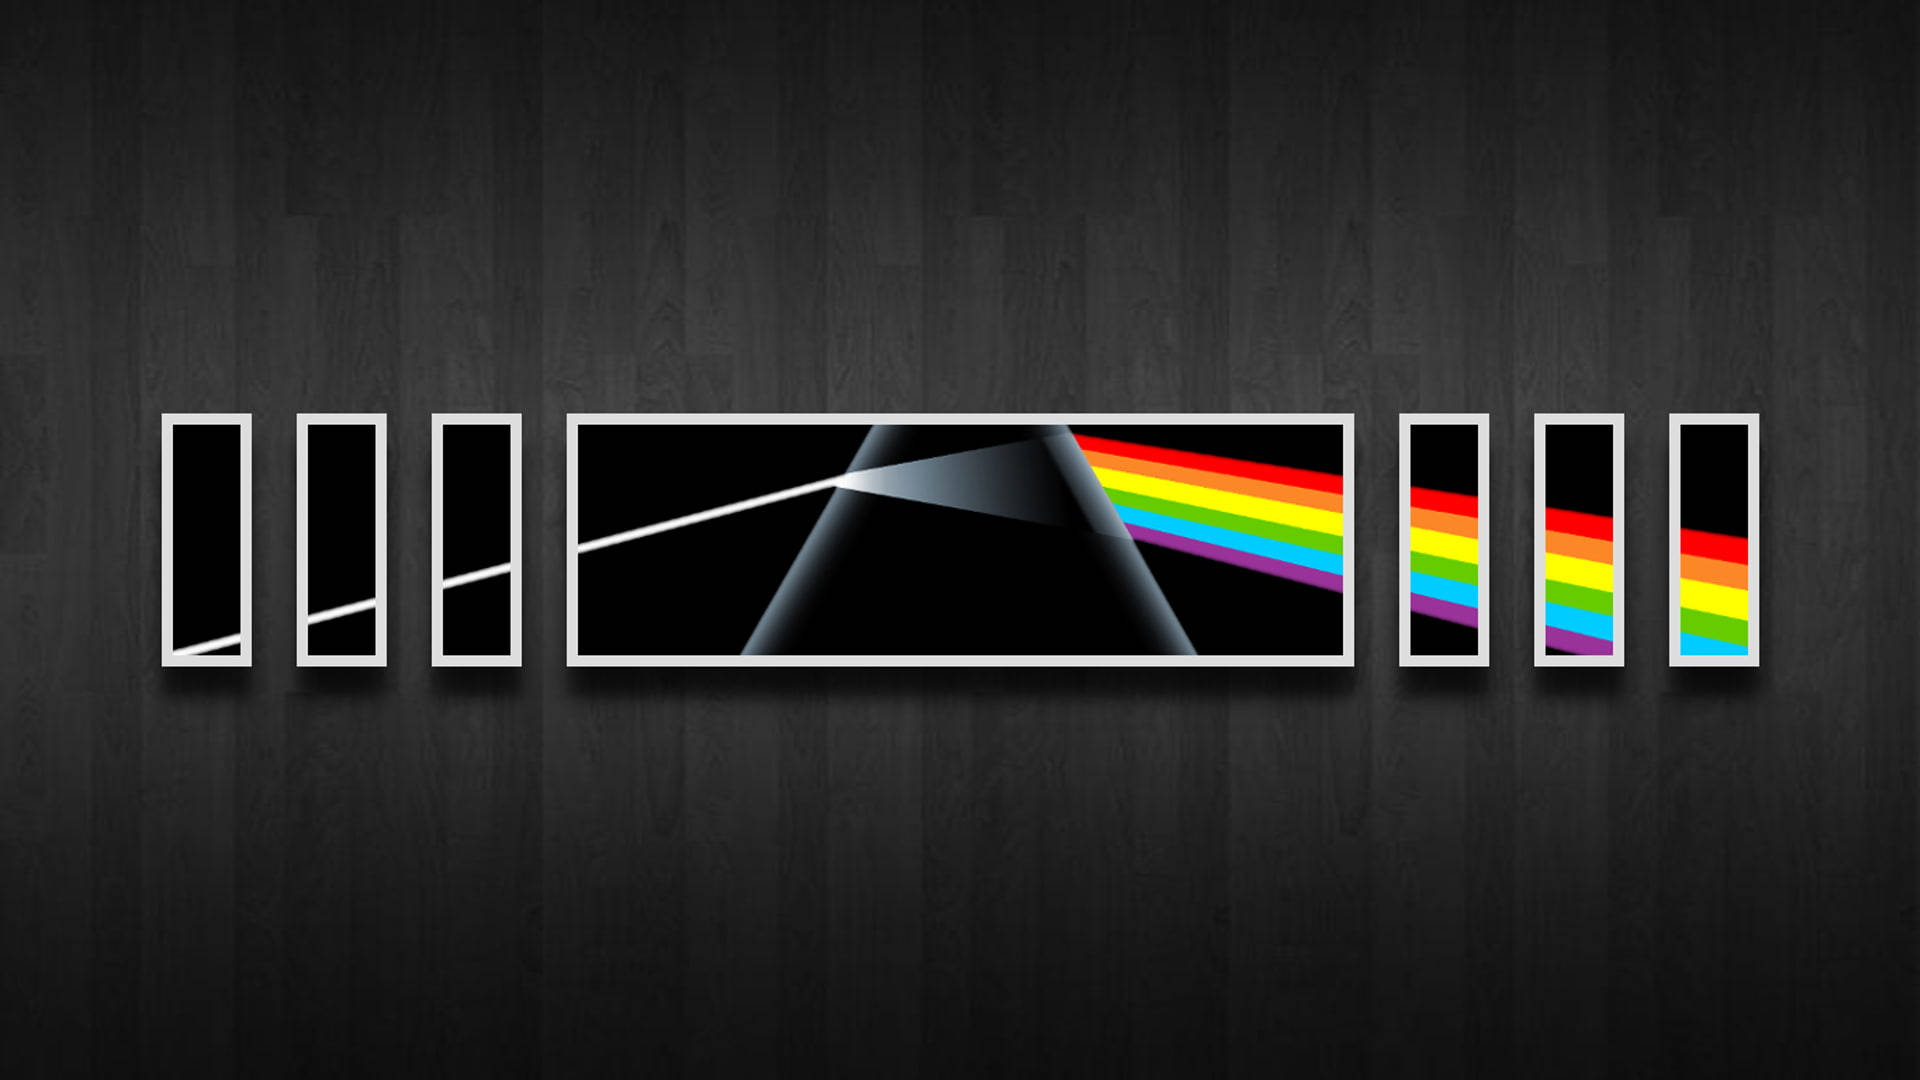 Pink Floyd 4k The Dark Side Of The Moon Multi-screen